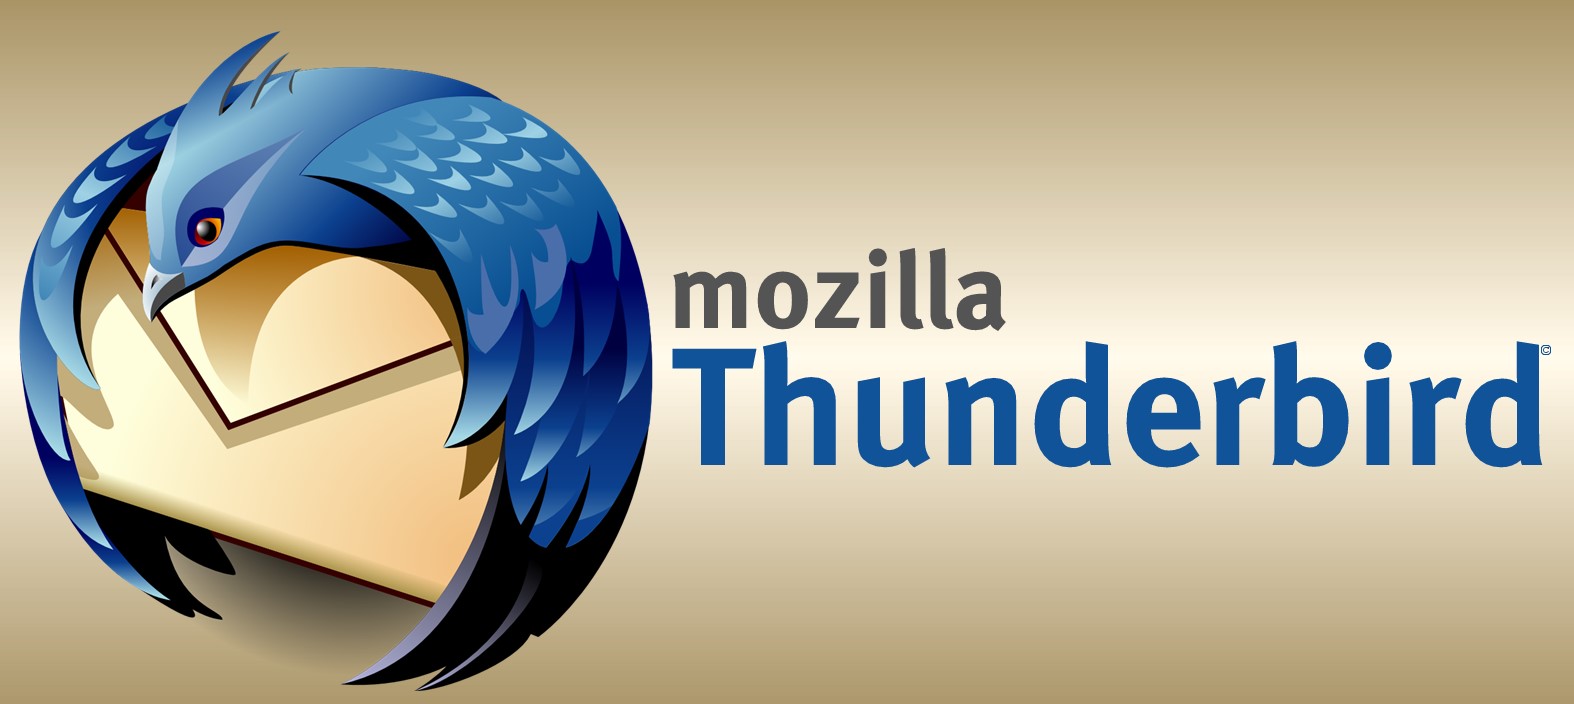 How To Archive Mozilla Thunderbird Mail Folders